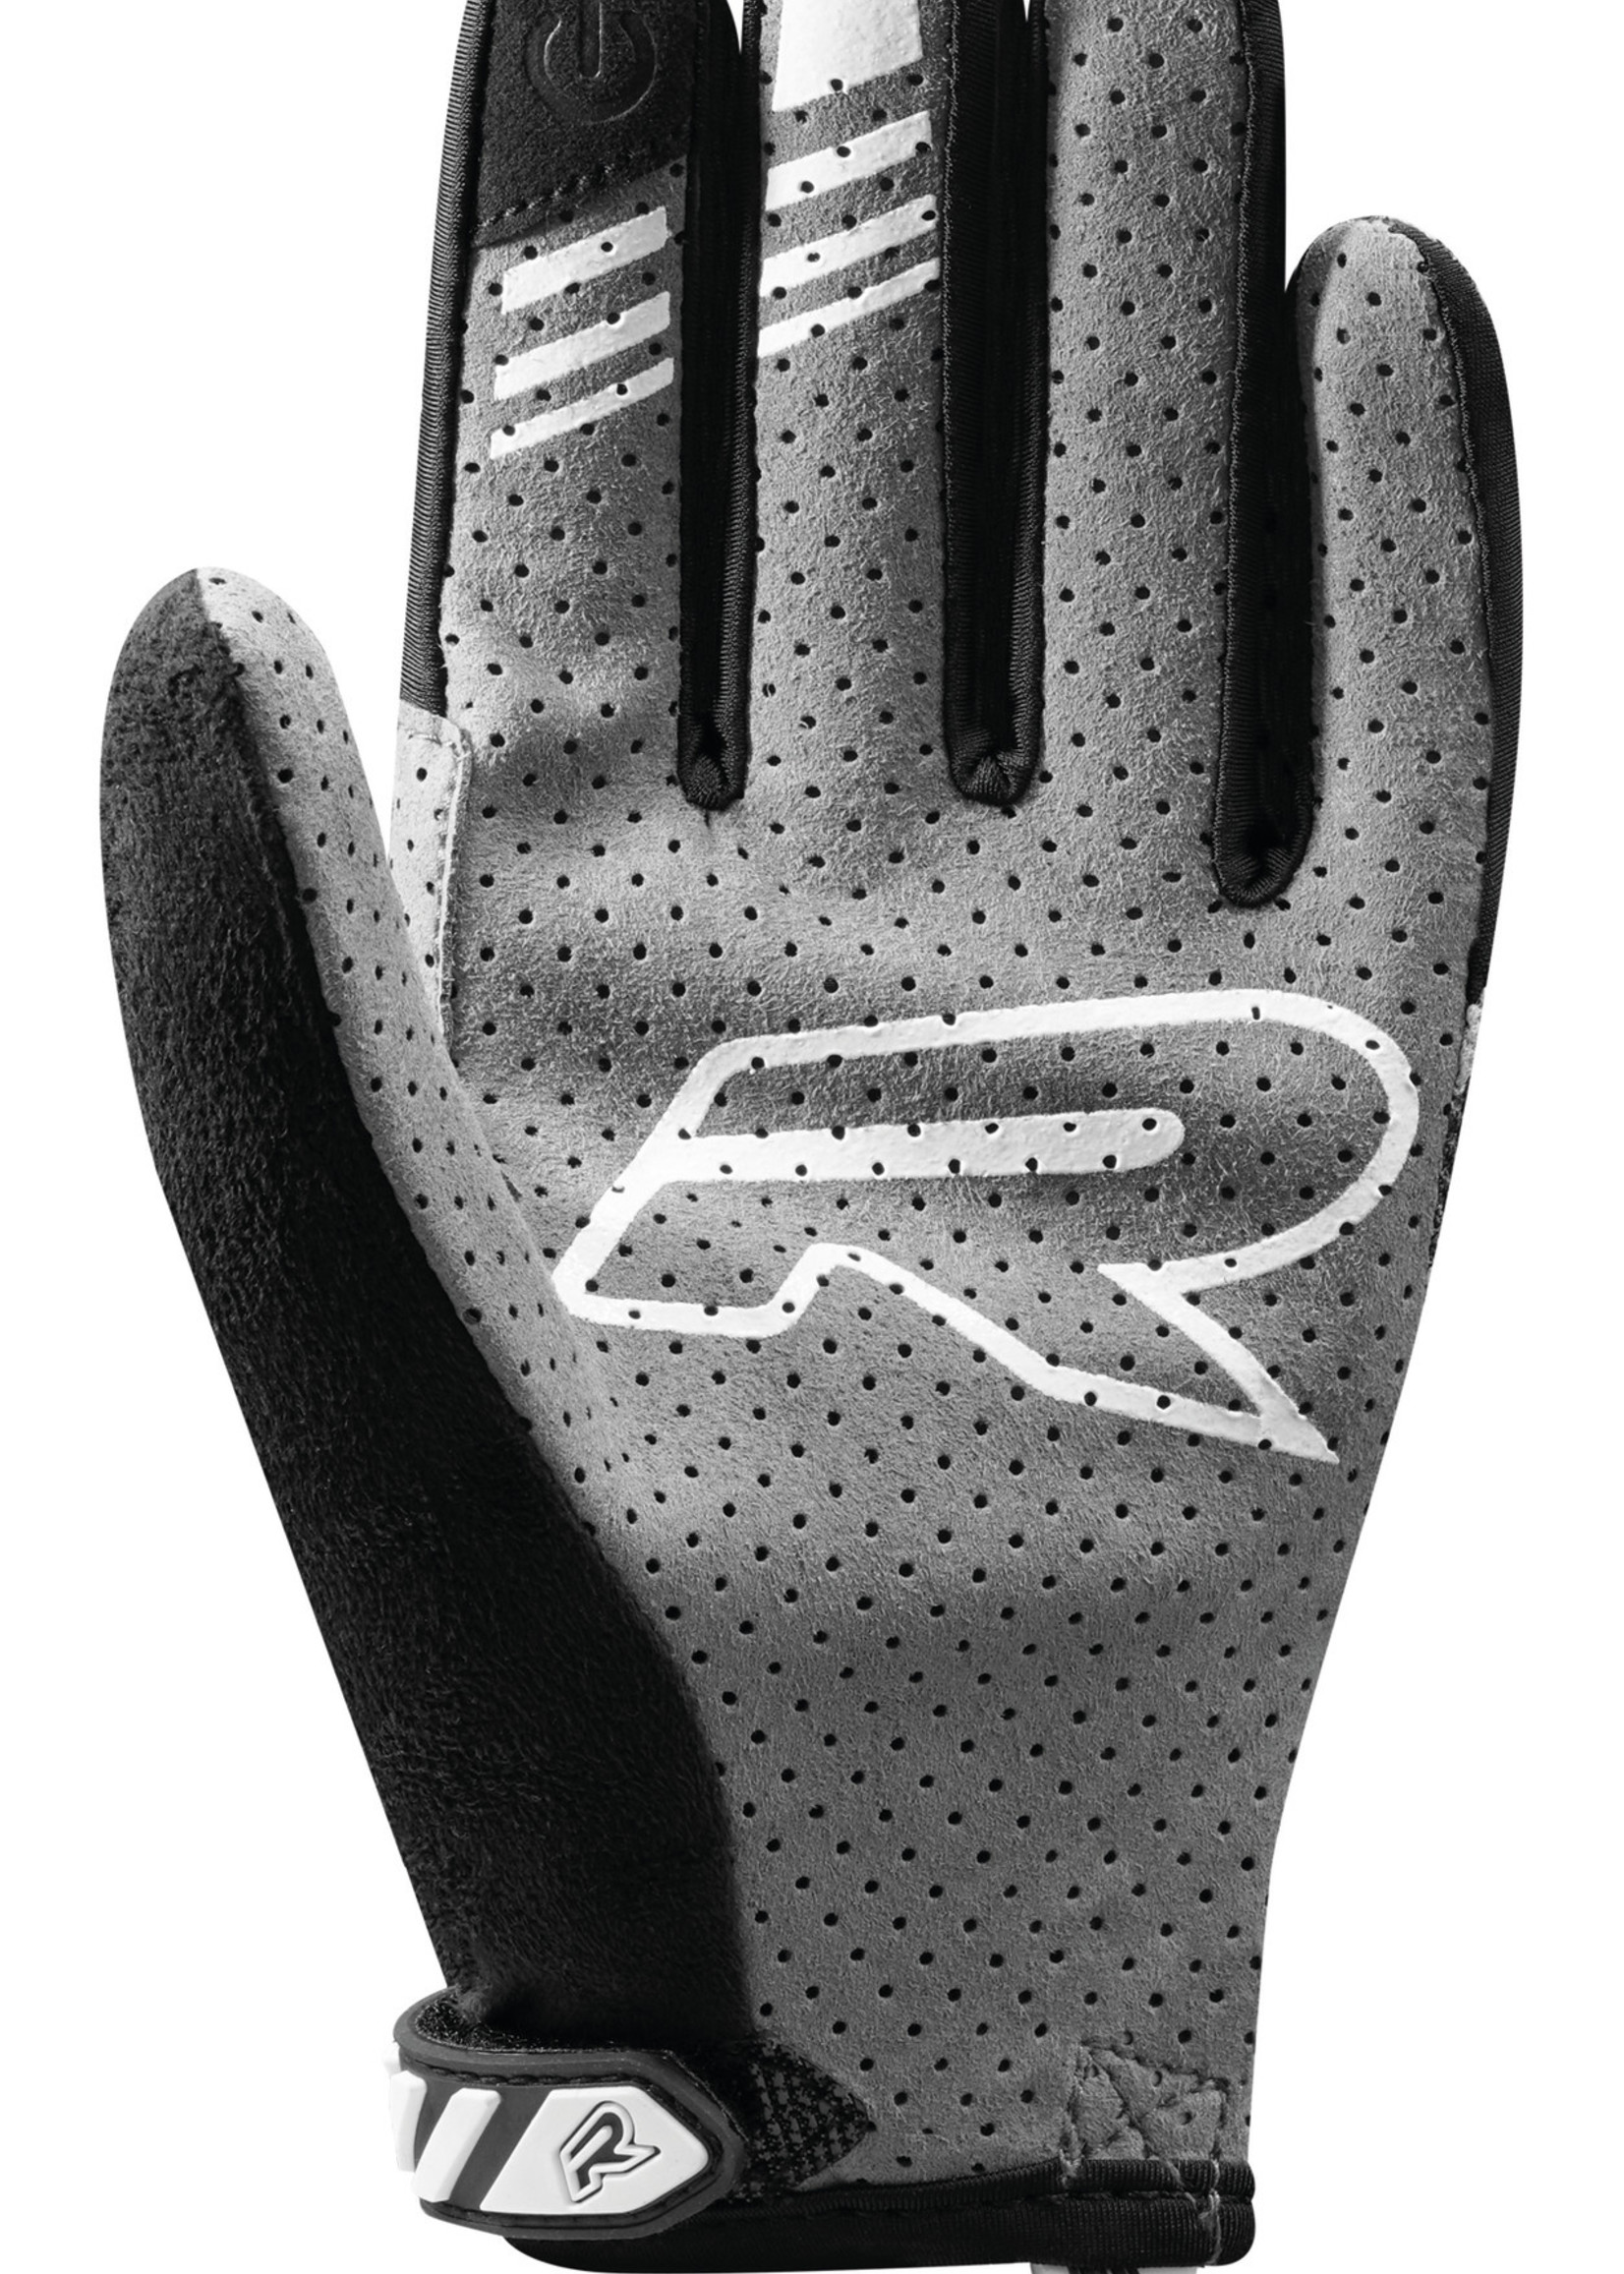 Racer Racer GP Style Gloves